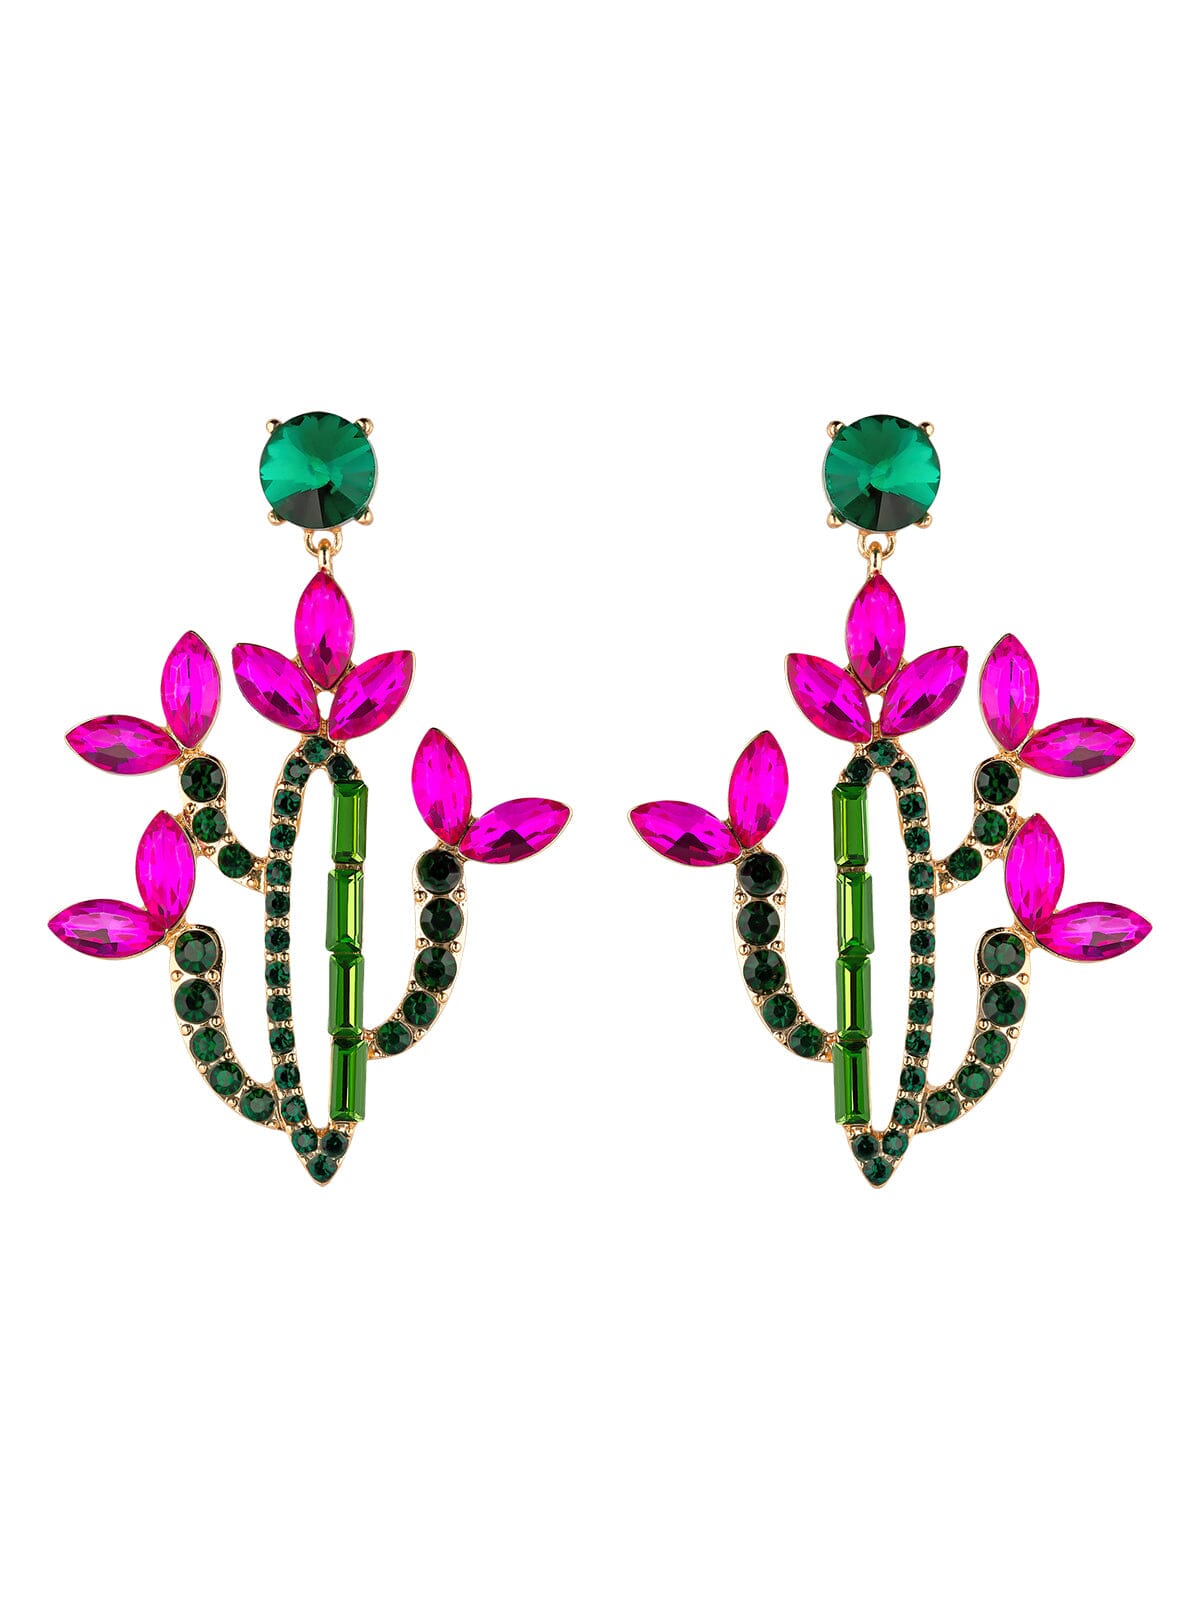 Crystal Cactus in Bloom Dangle Earrings earrings Vinty Jewelry 